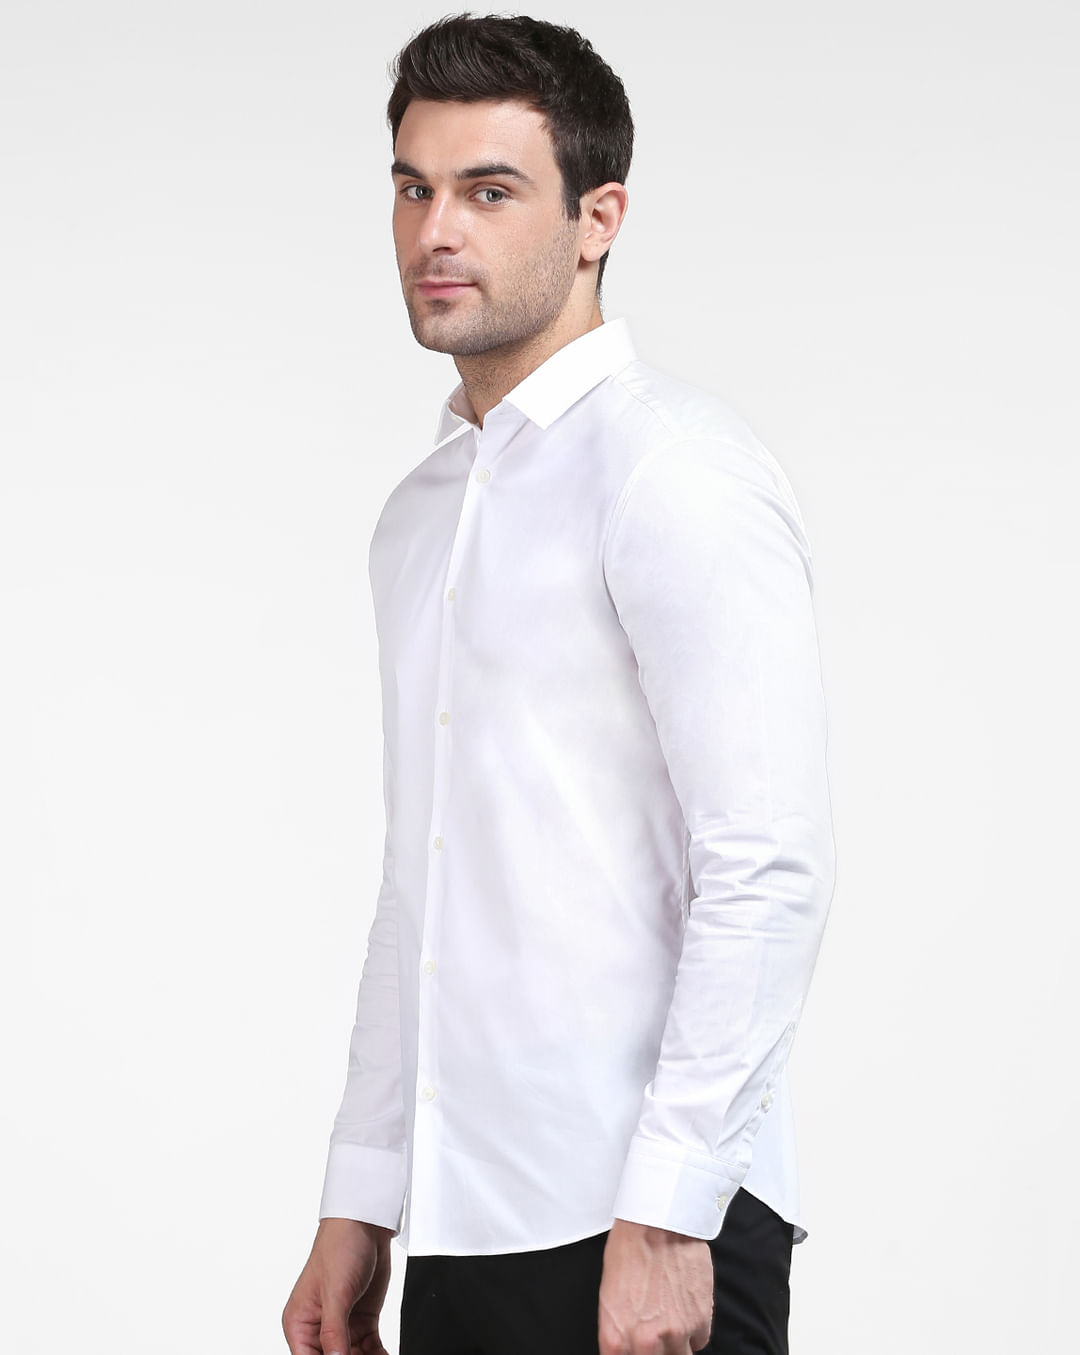 Buy White SELECTED Online at Formal Full | 200658602 HOMME Men Shirt Sleeves for